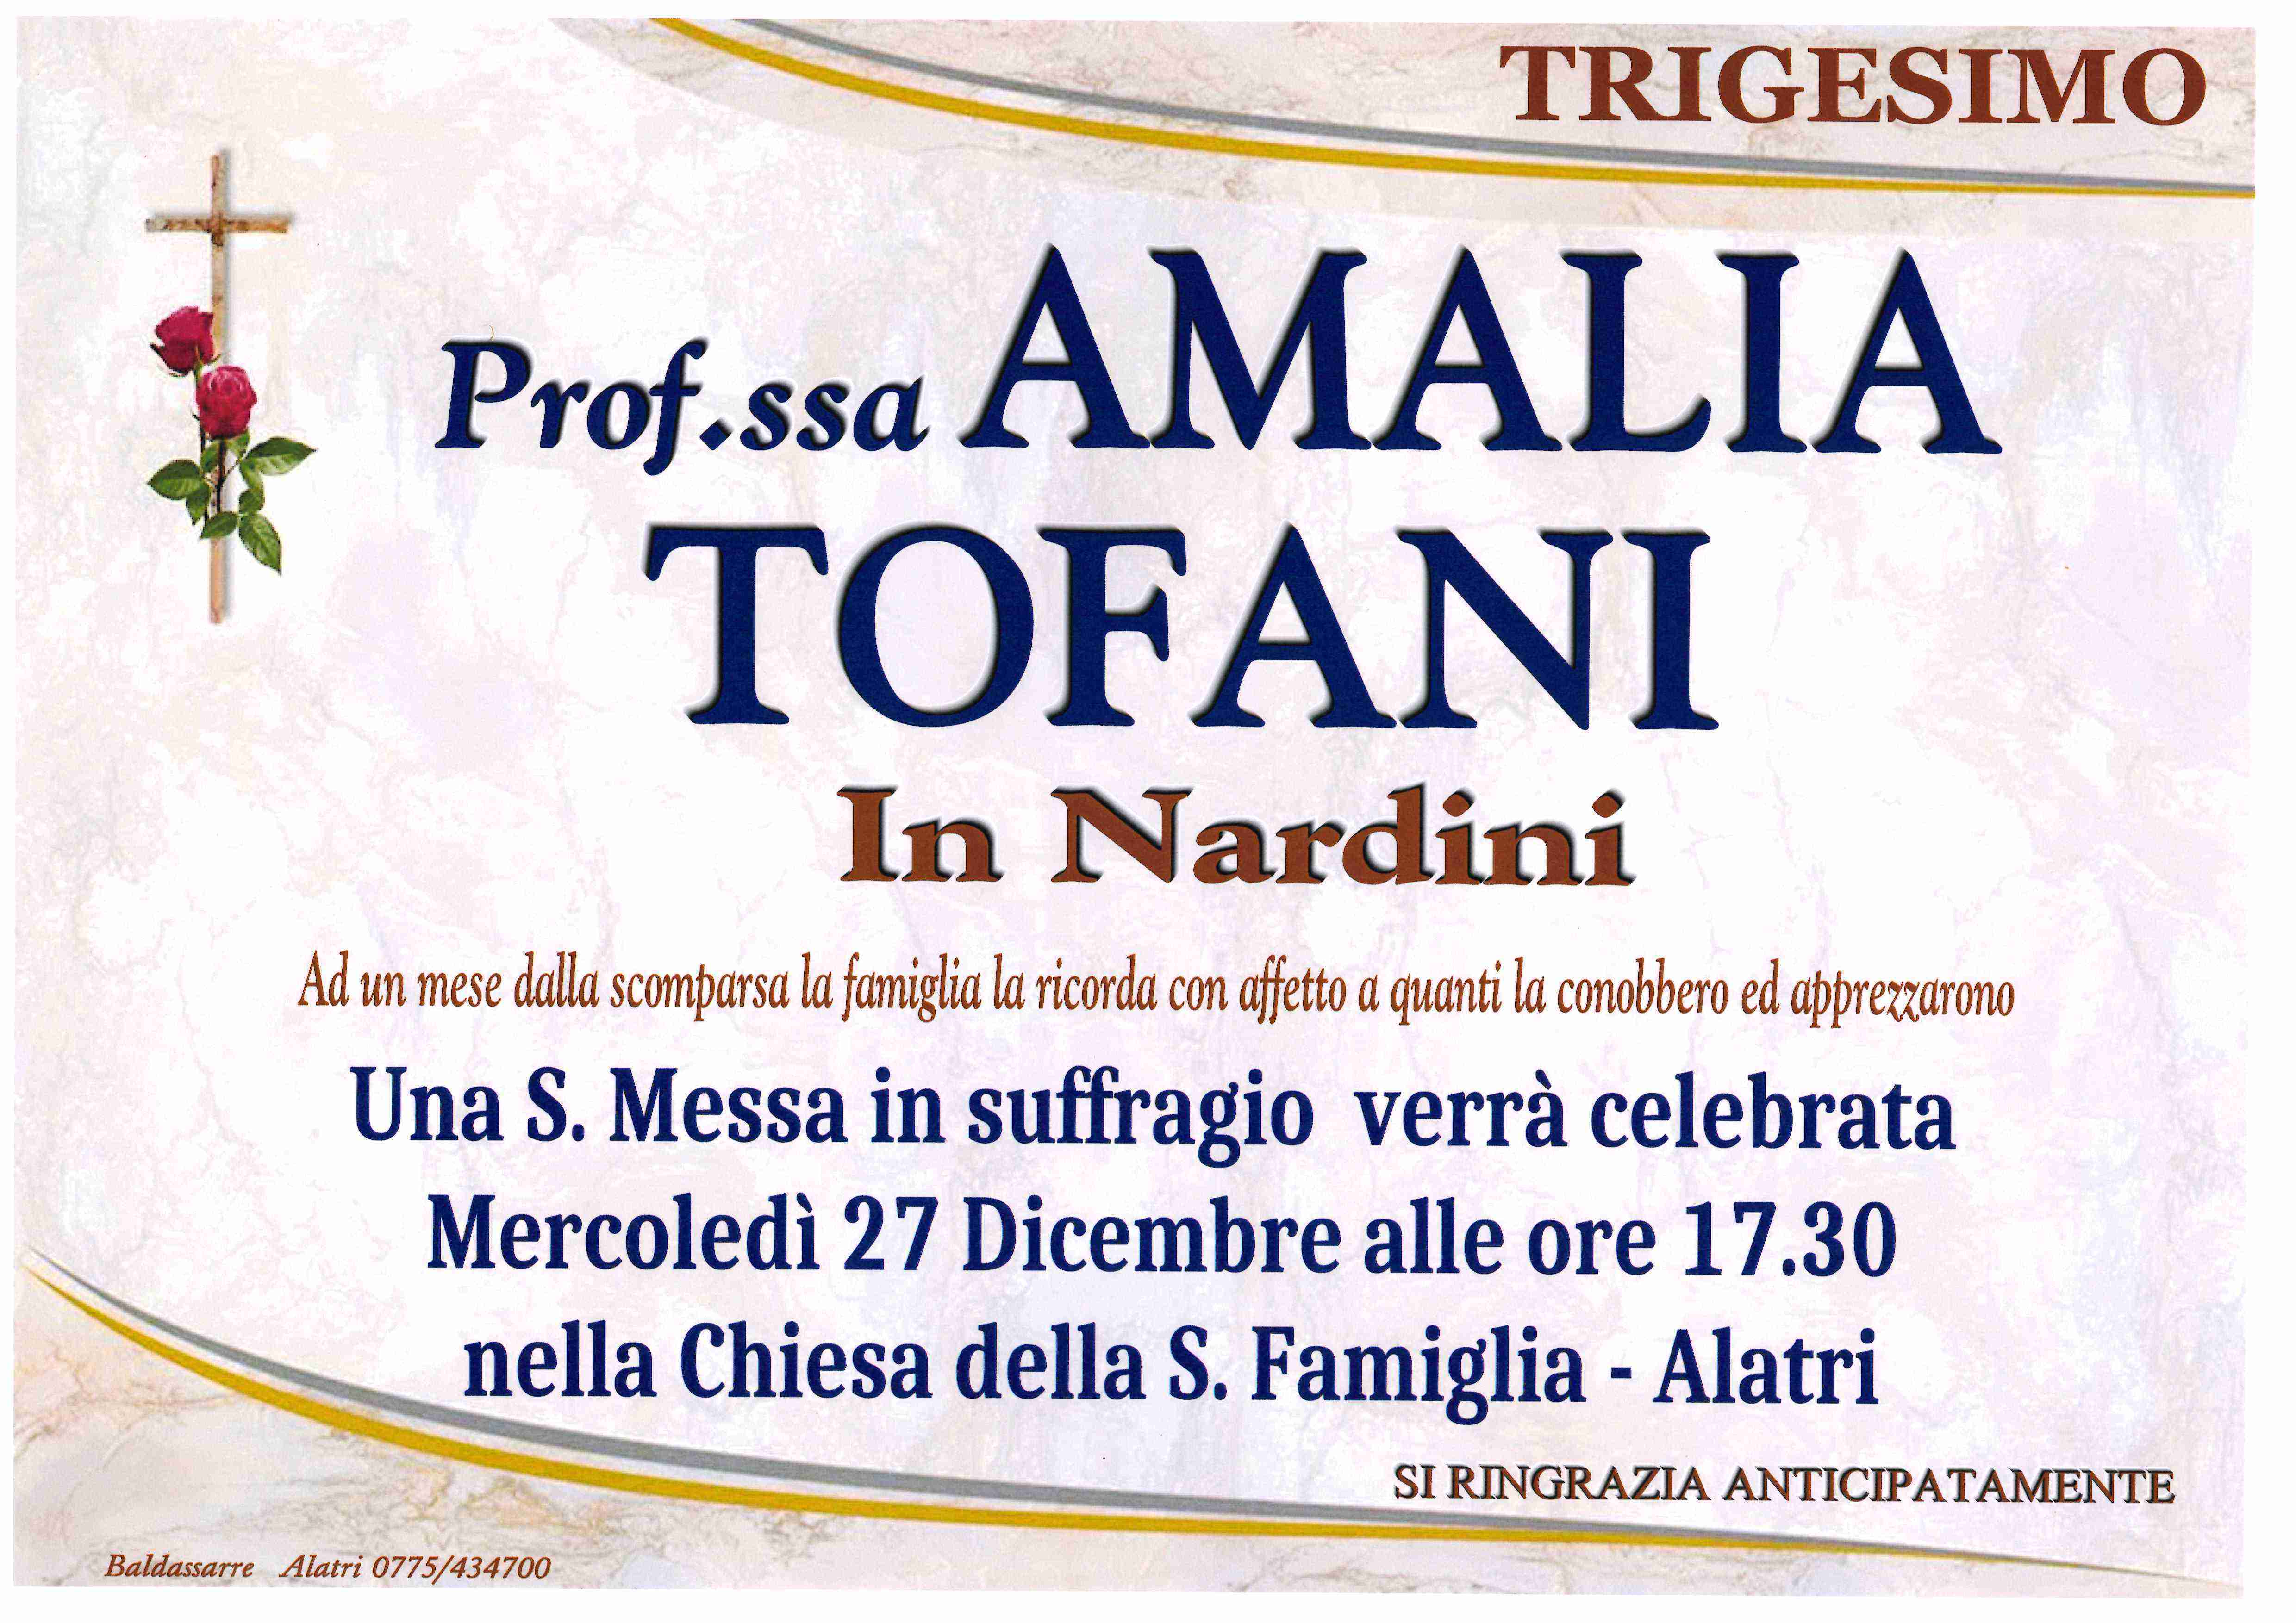 Amalia Tofani